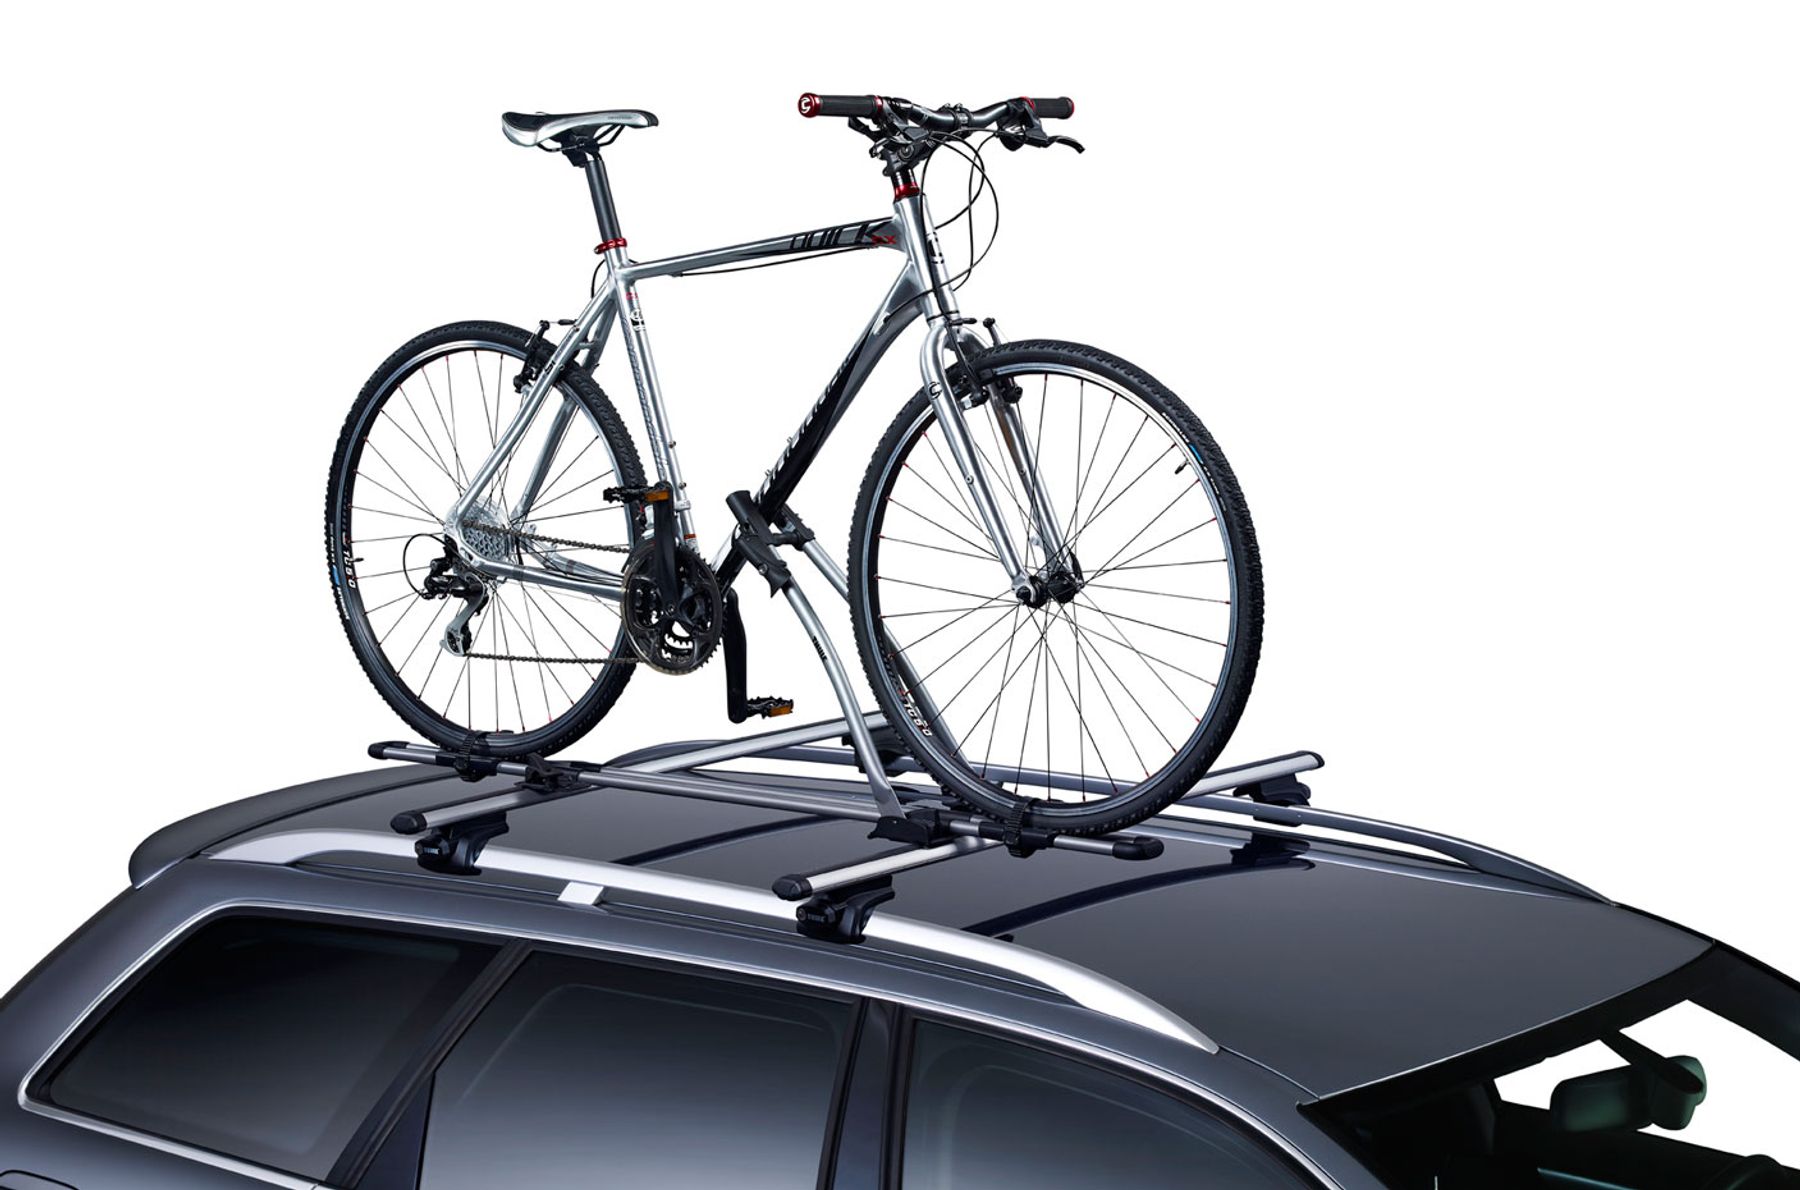 1 Rad voll abschließbar Fahrradträger Thule Free Ride 532 für Skoda Roomster